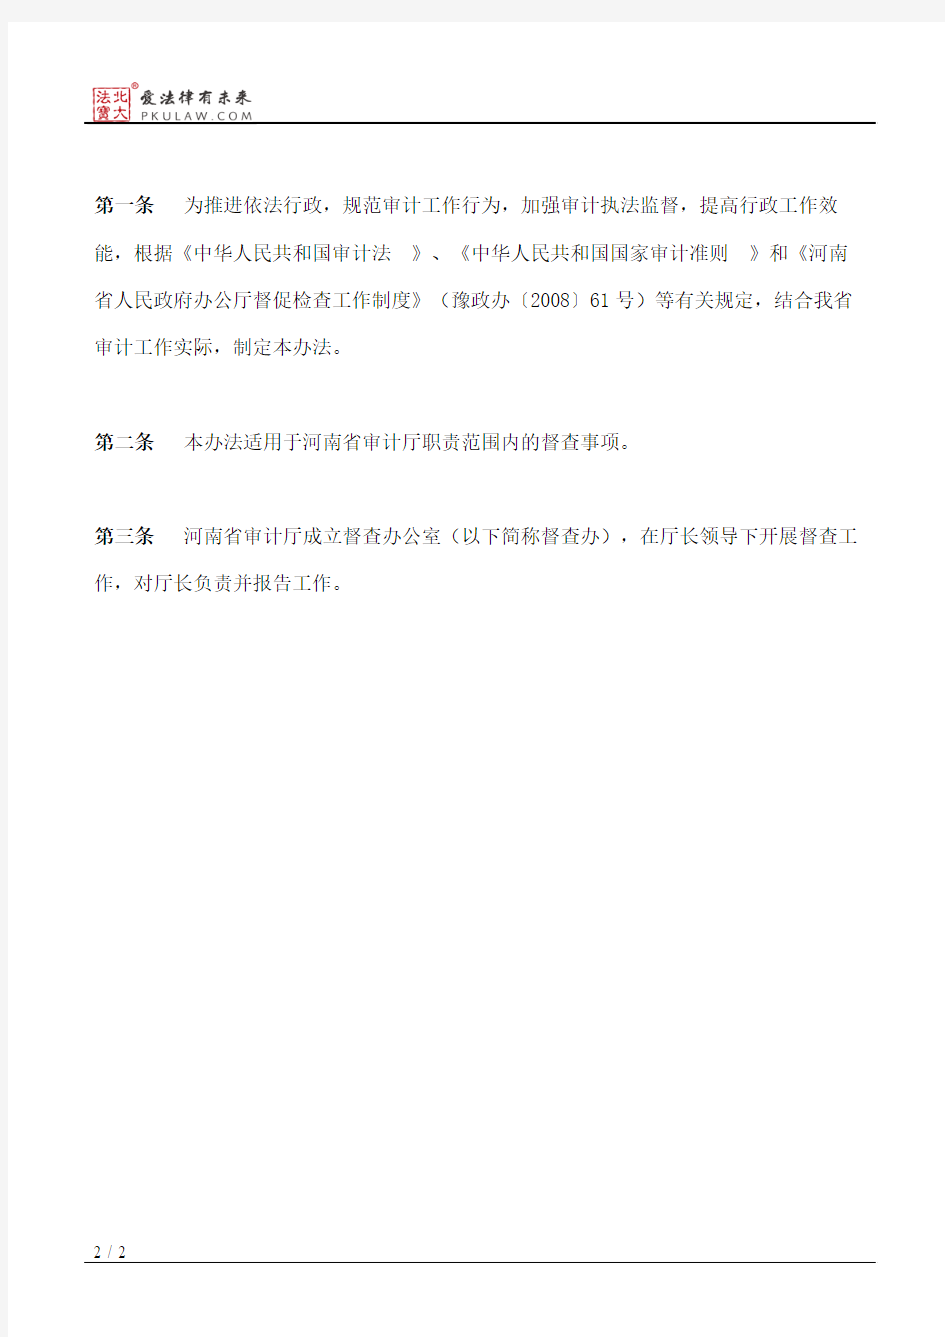 河南省审计厅关于印发河南省审计厅督查工作暂行办法的通知